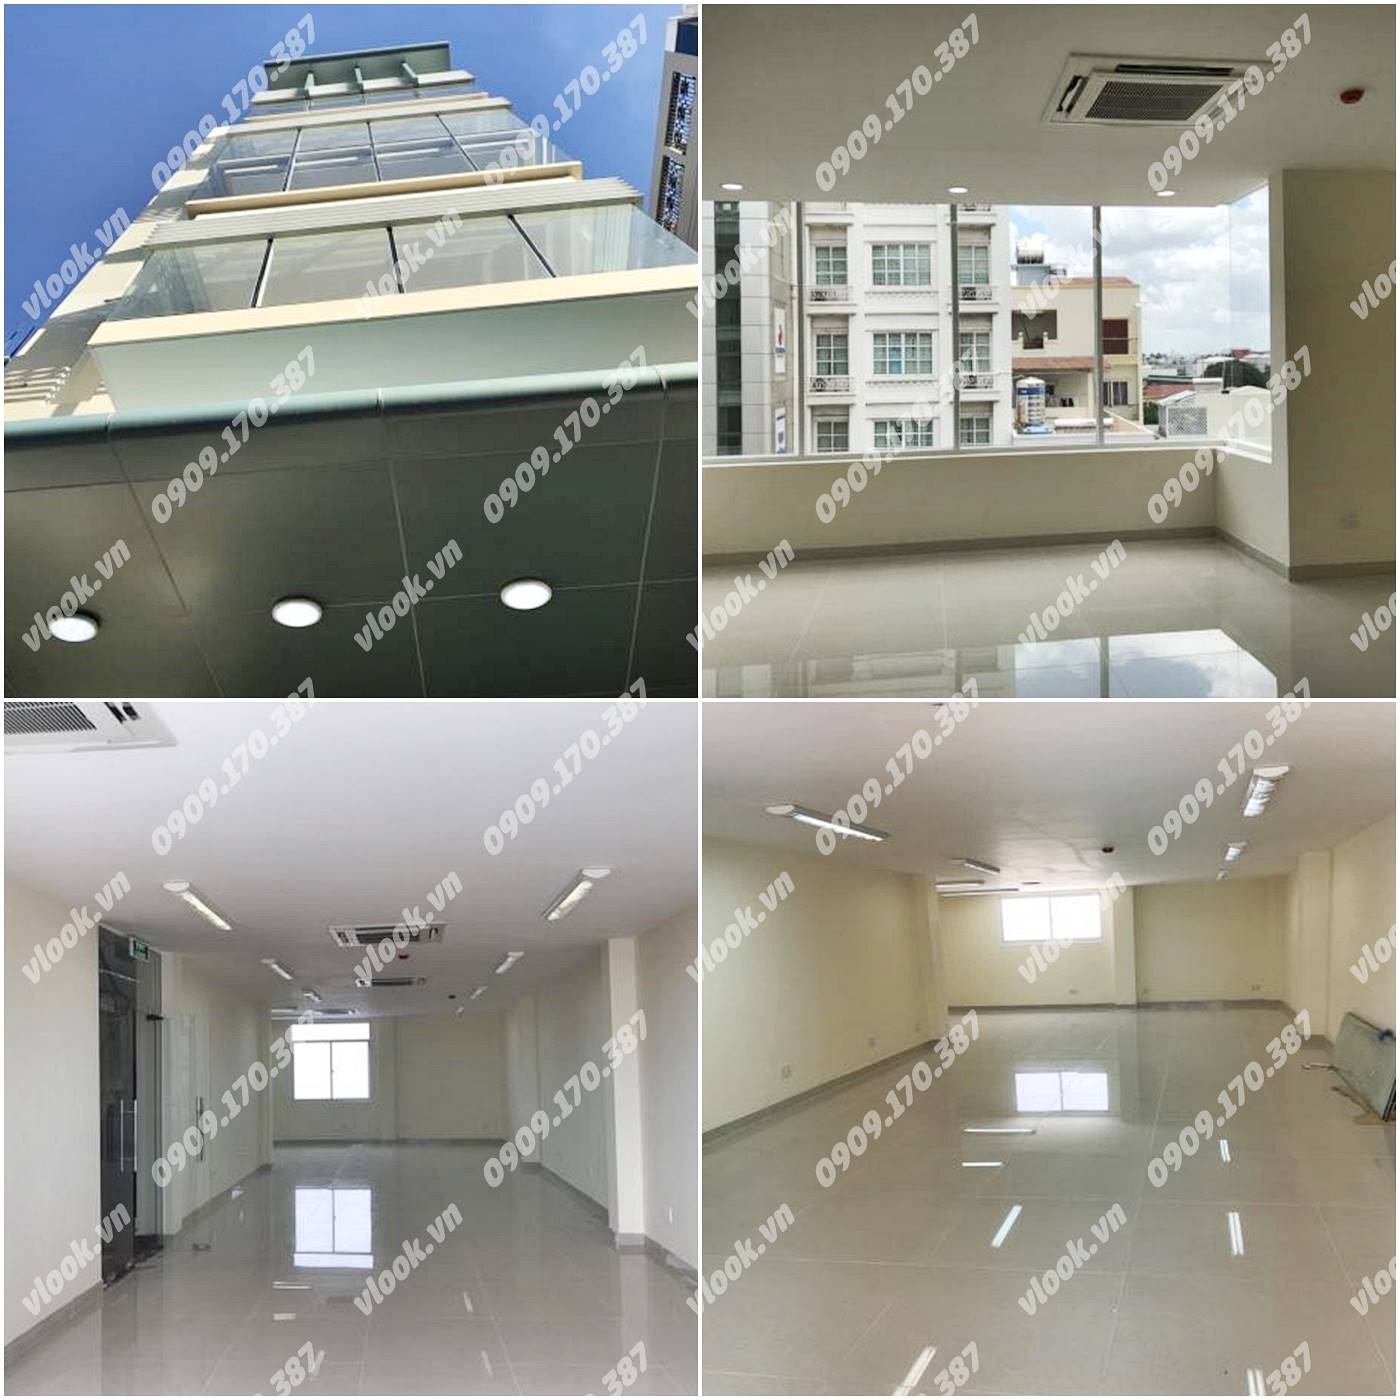 Cao ốc cho thuê văn phòng TT Building 88 Bạch Đằng Quận Tân Bình TPHCM - vlook.vn